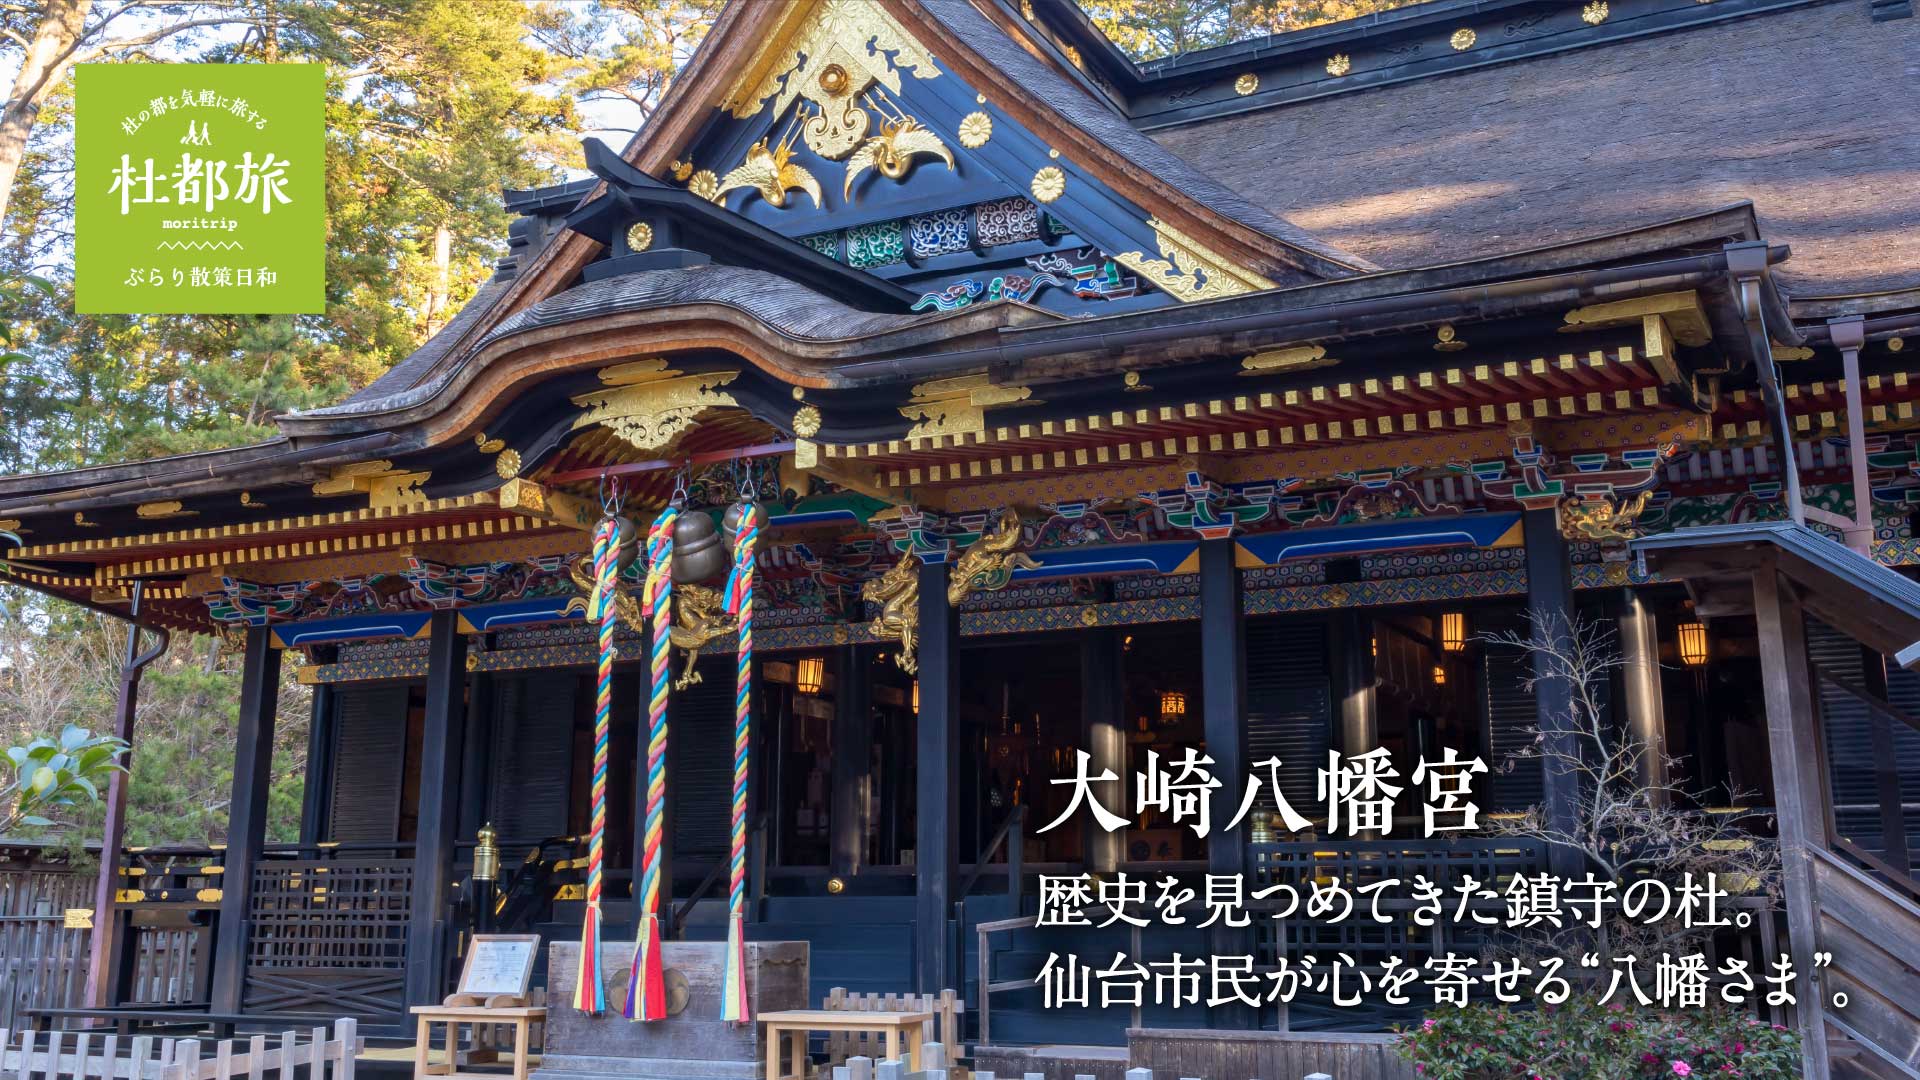 大崎八幡宮〜歴史を見つめてきた鎮守の杜。仙台市民が心を寄せる“八幡さま”。